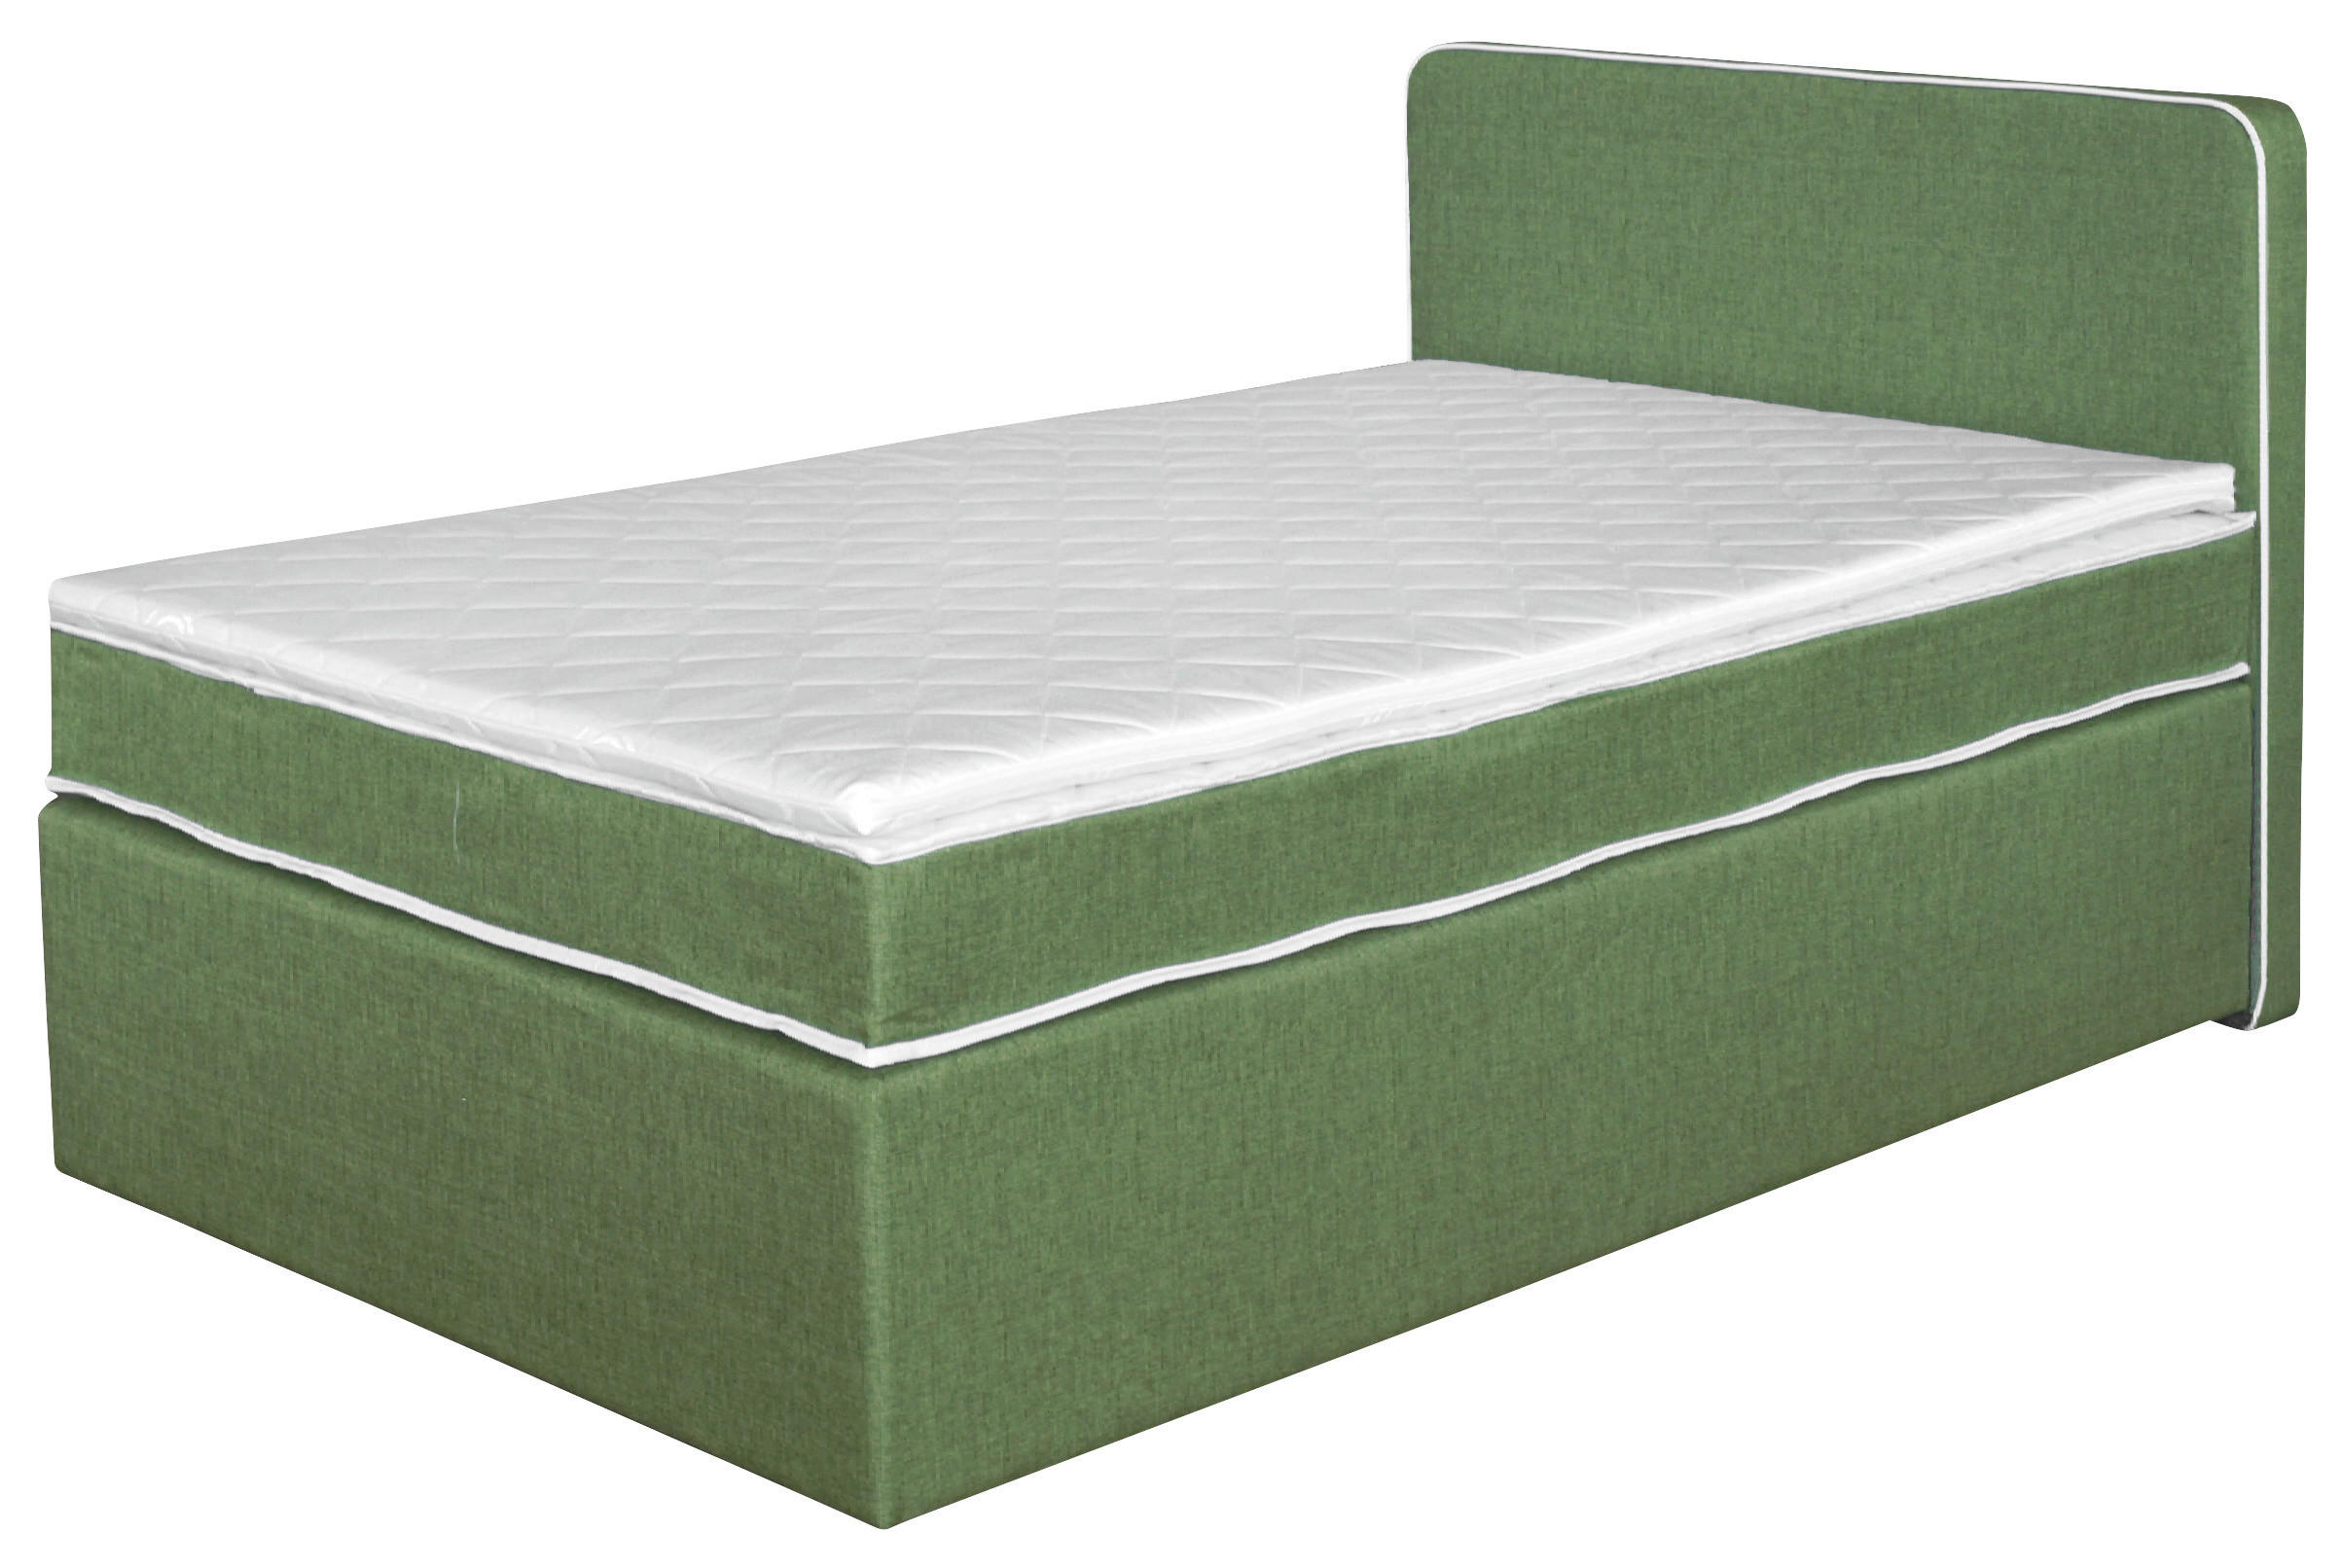 BOXSPRING KREVET 120/200 cm     zelena  - zelena/smeđa, Design, drvni materijal/tekstil (120/200cm) - Boxxx